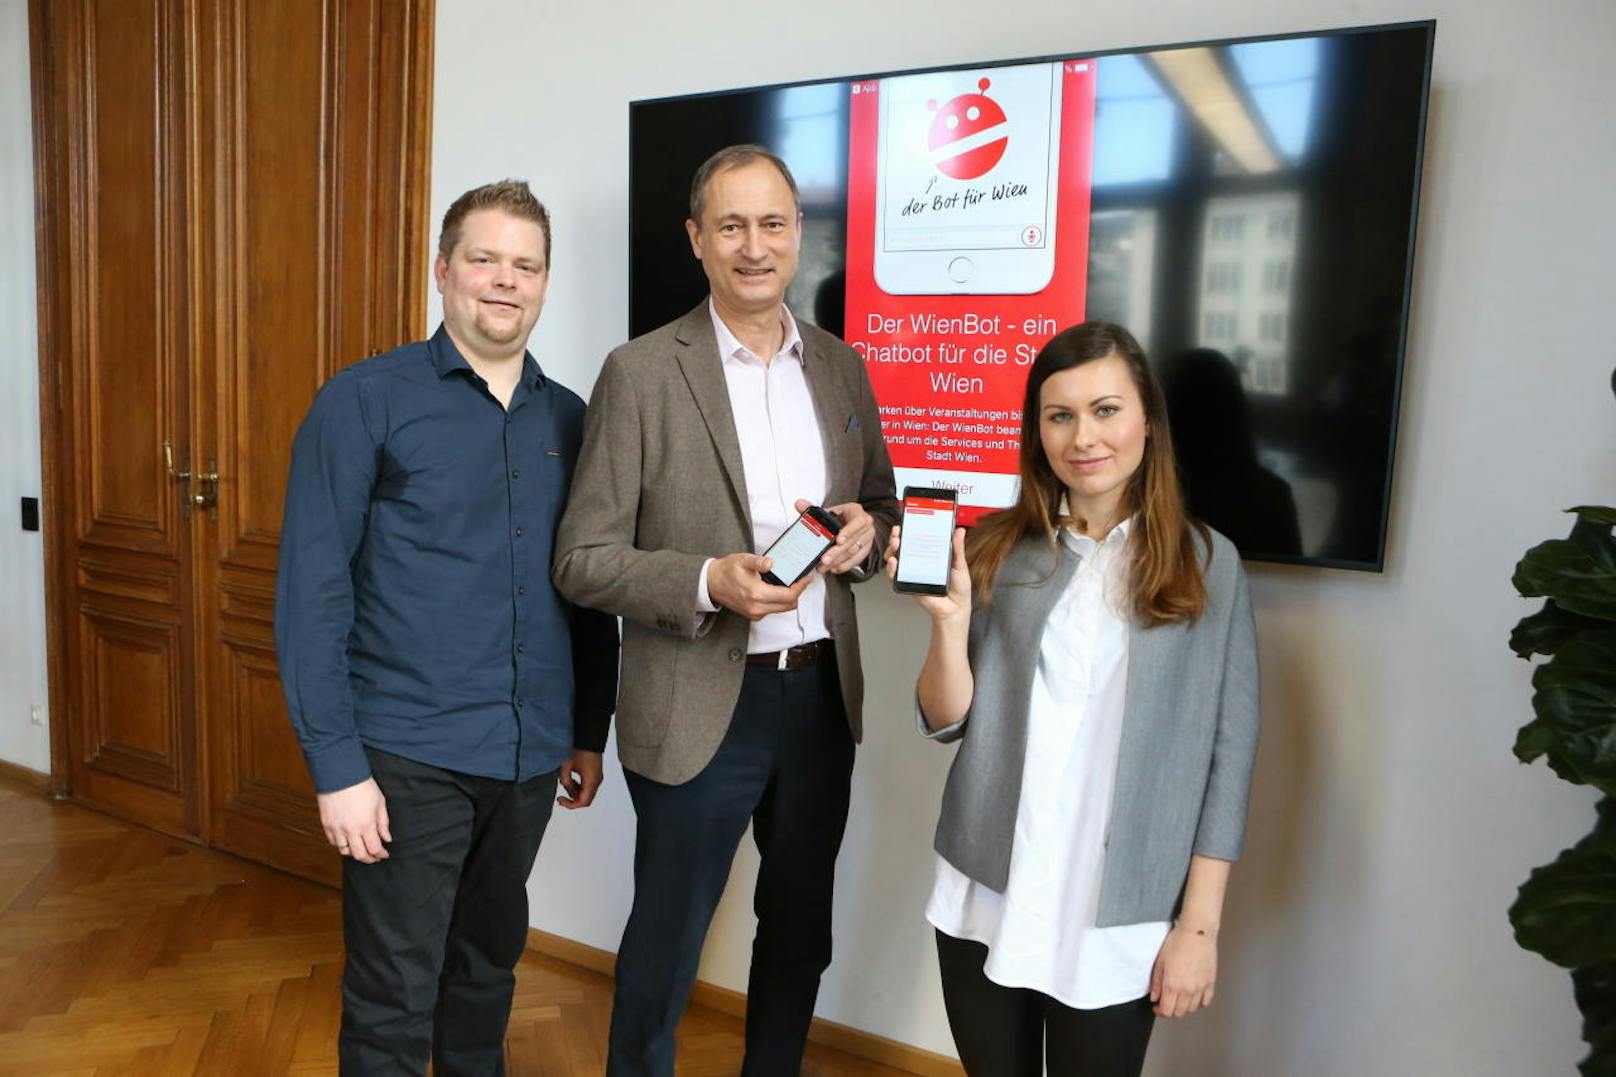 Der "WienBot" wurde von der MA53 - Presse- und Informationsdienst der Stadt Wien entwickelt. Kultur- und Wissenschaftsstadt Andreas Mailath-Pokorny stellte die neue App gemeinsam mit Sindre Wimberger (links) und Carmen Fritz (rechts, beide MA53) vor.